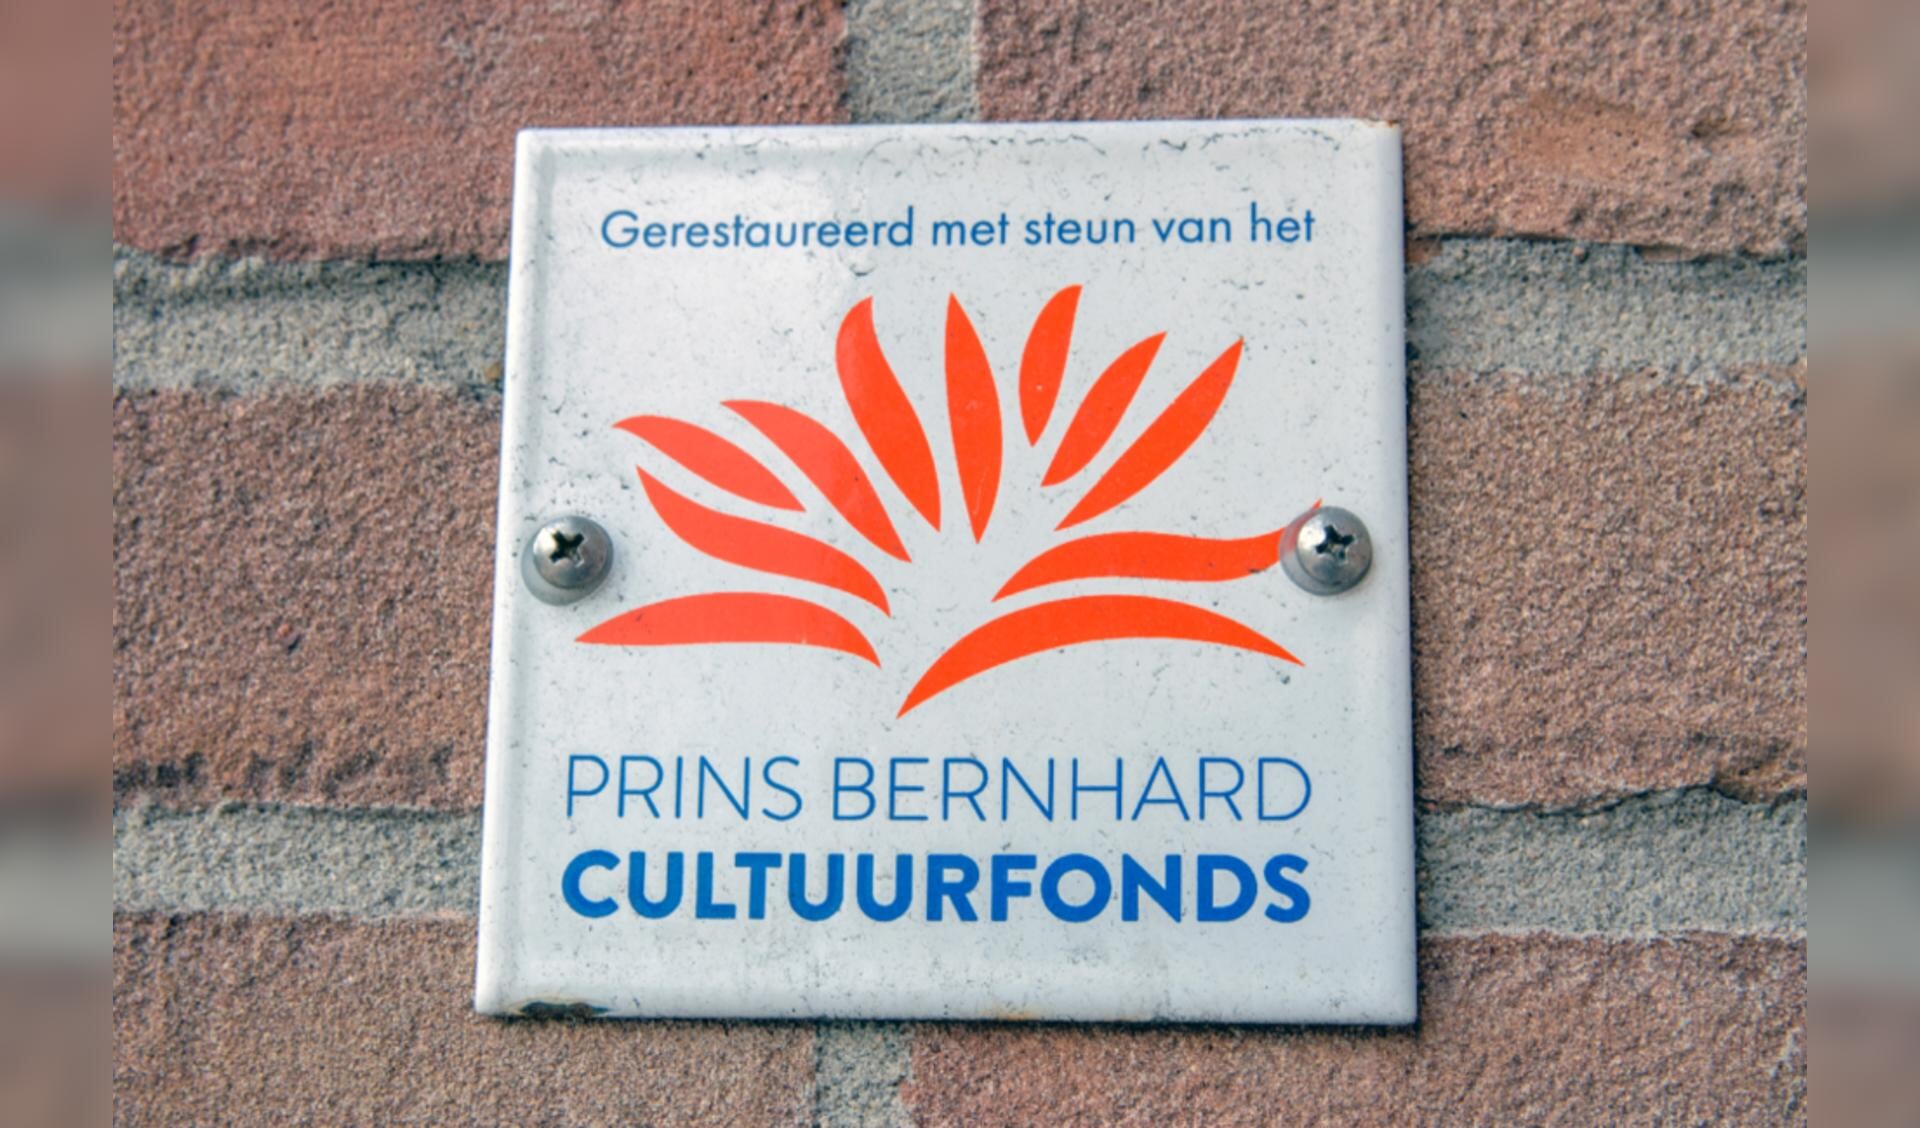 Restauraties worden ook mede gefinancierd met bijdragen uit hetPrins Bernhard Cultuurfonds.